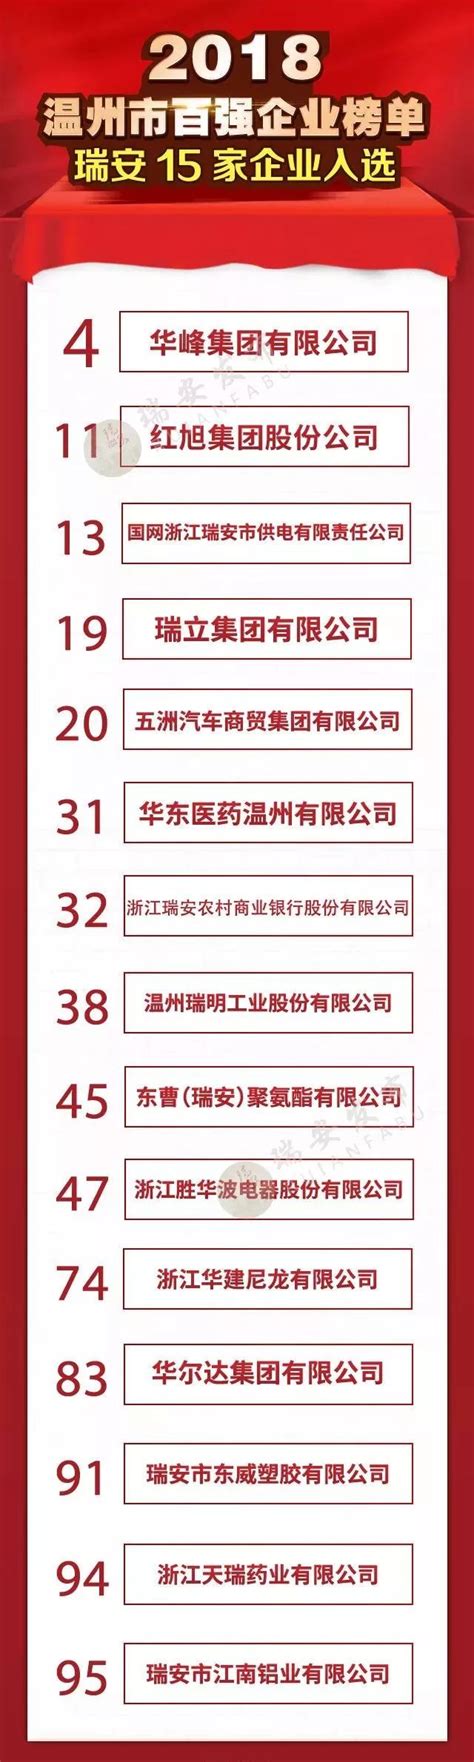 温州市百强企业名单，上海纳税百强企业名单-风水-火土易学